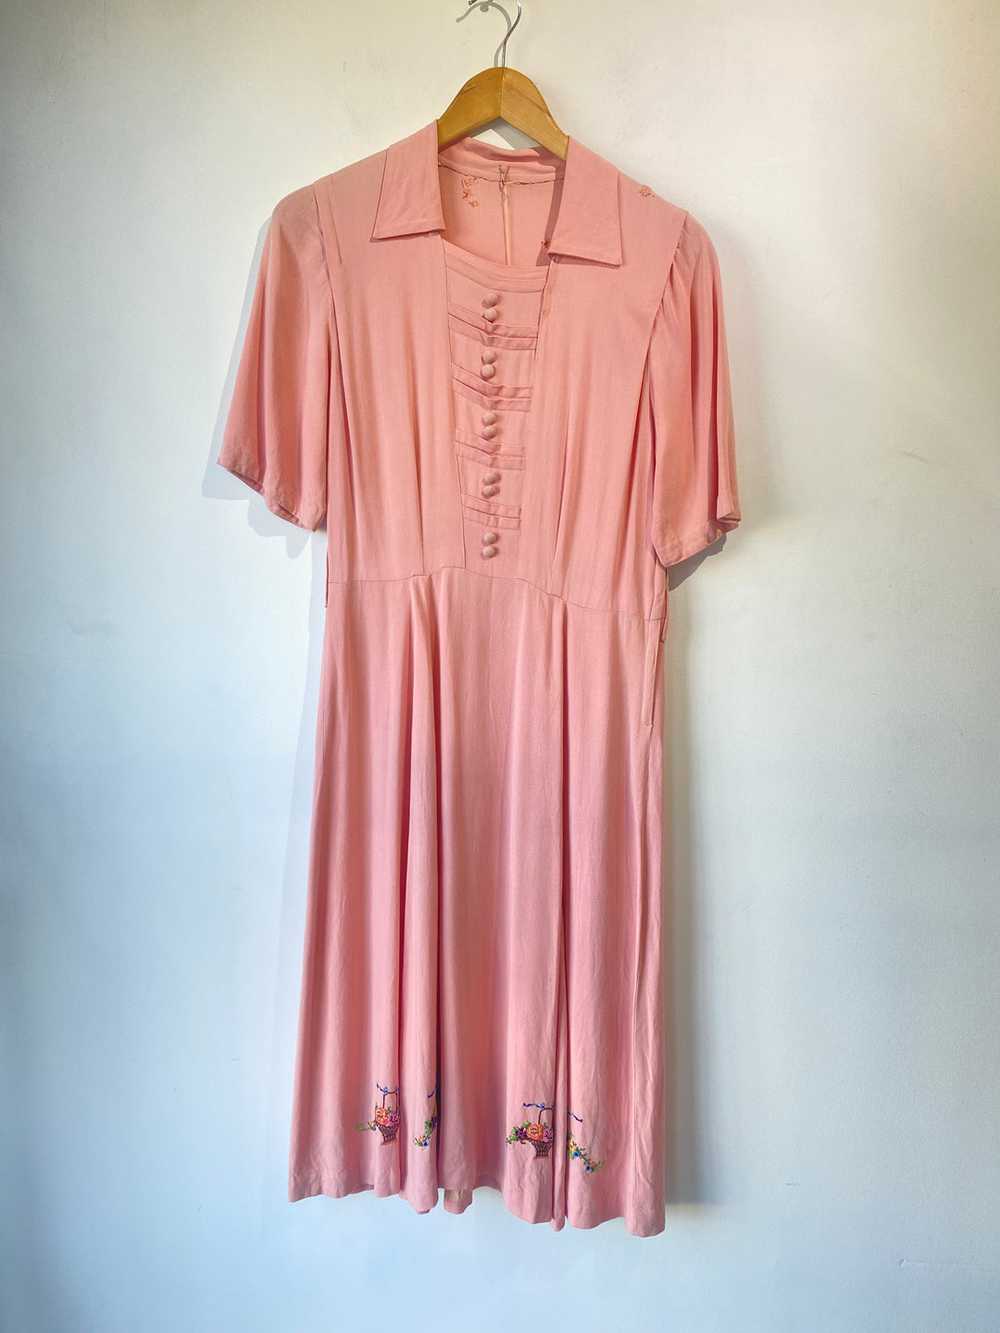 Vintage Pink Embroidered Dress - image 1